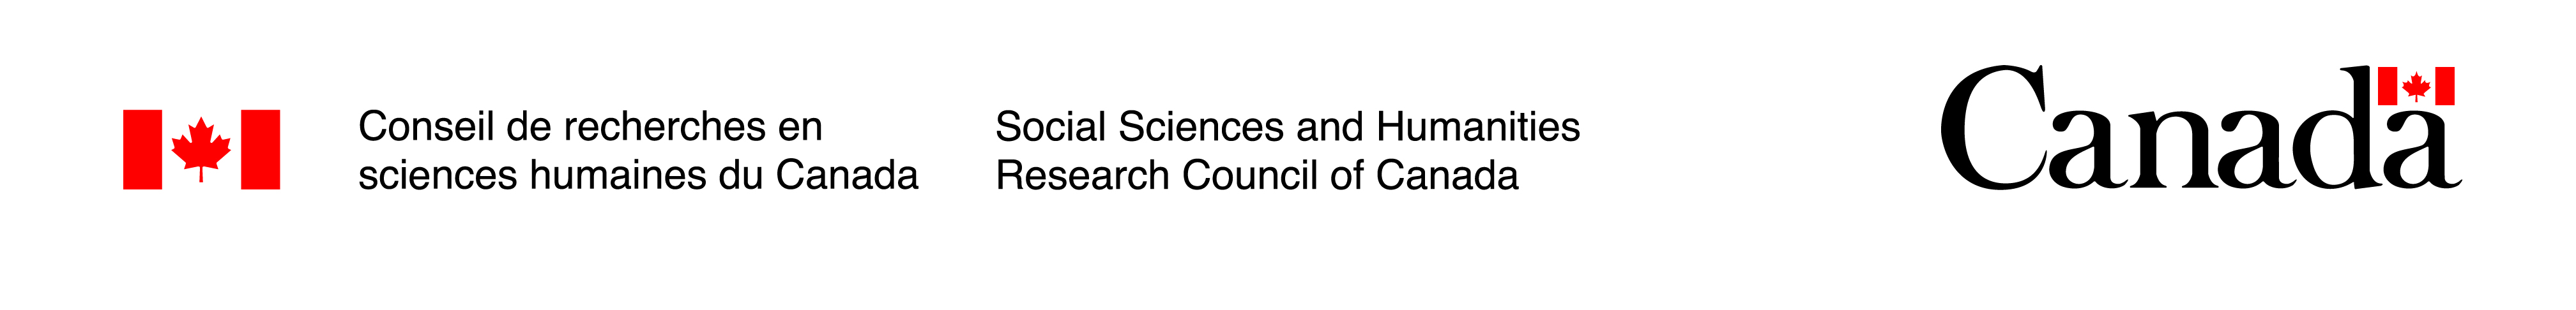 Conseil de recherches en sciences humaines